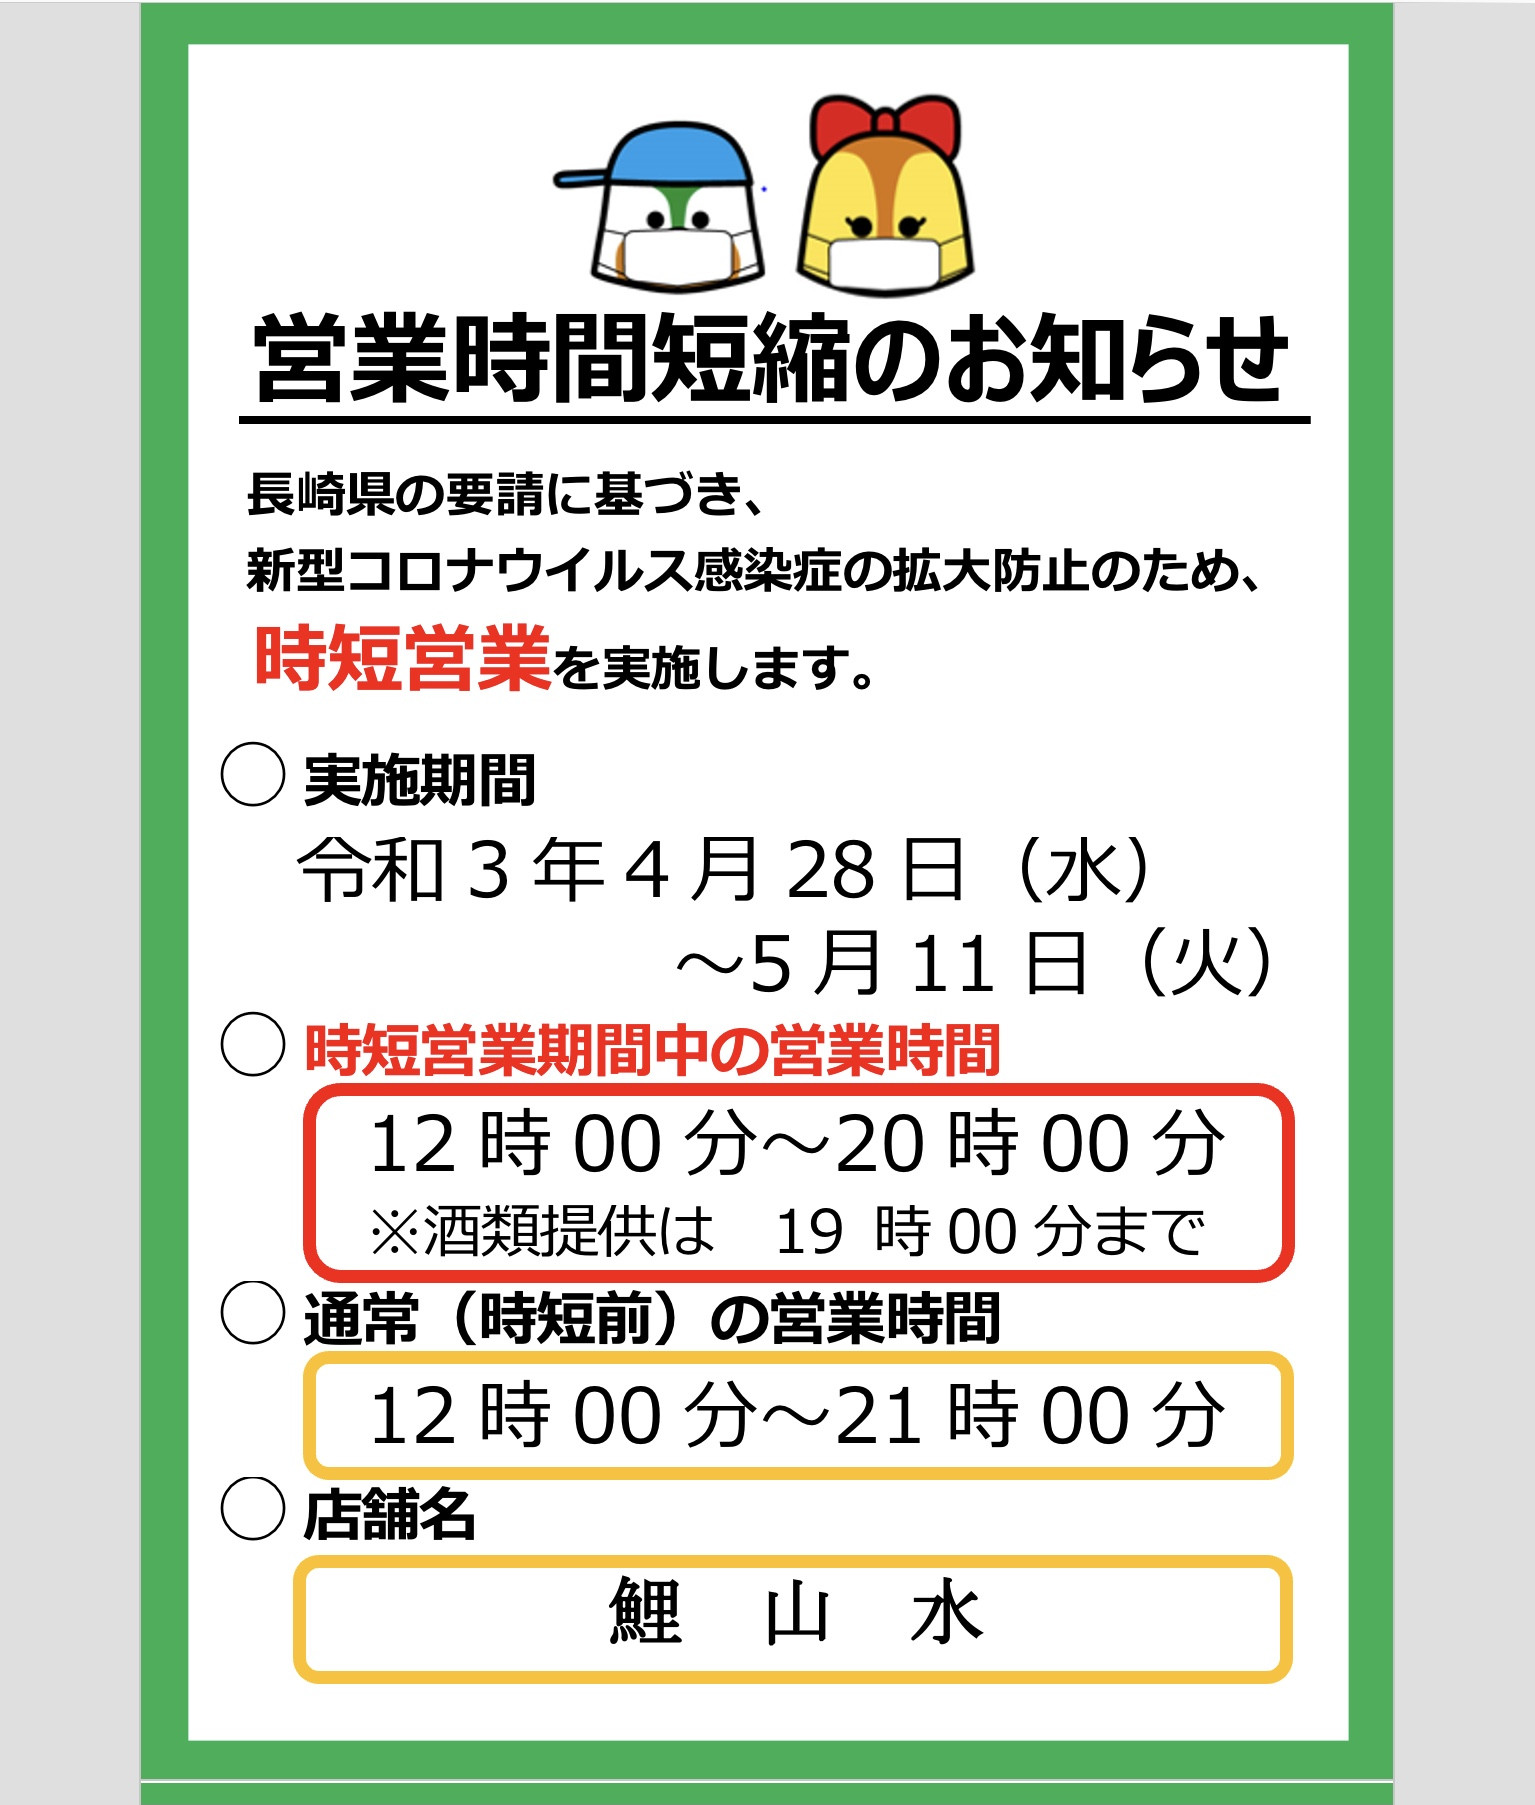 長崎市内における飲食店等に対する営業時間短縮要請について